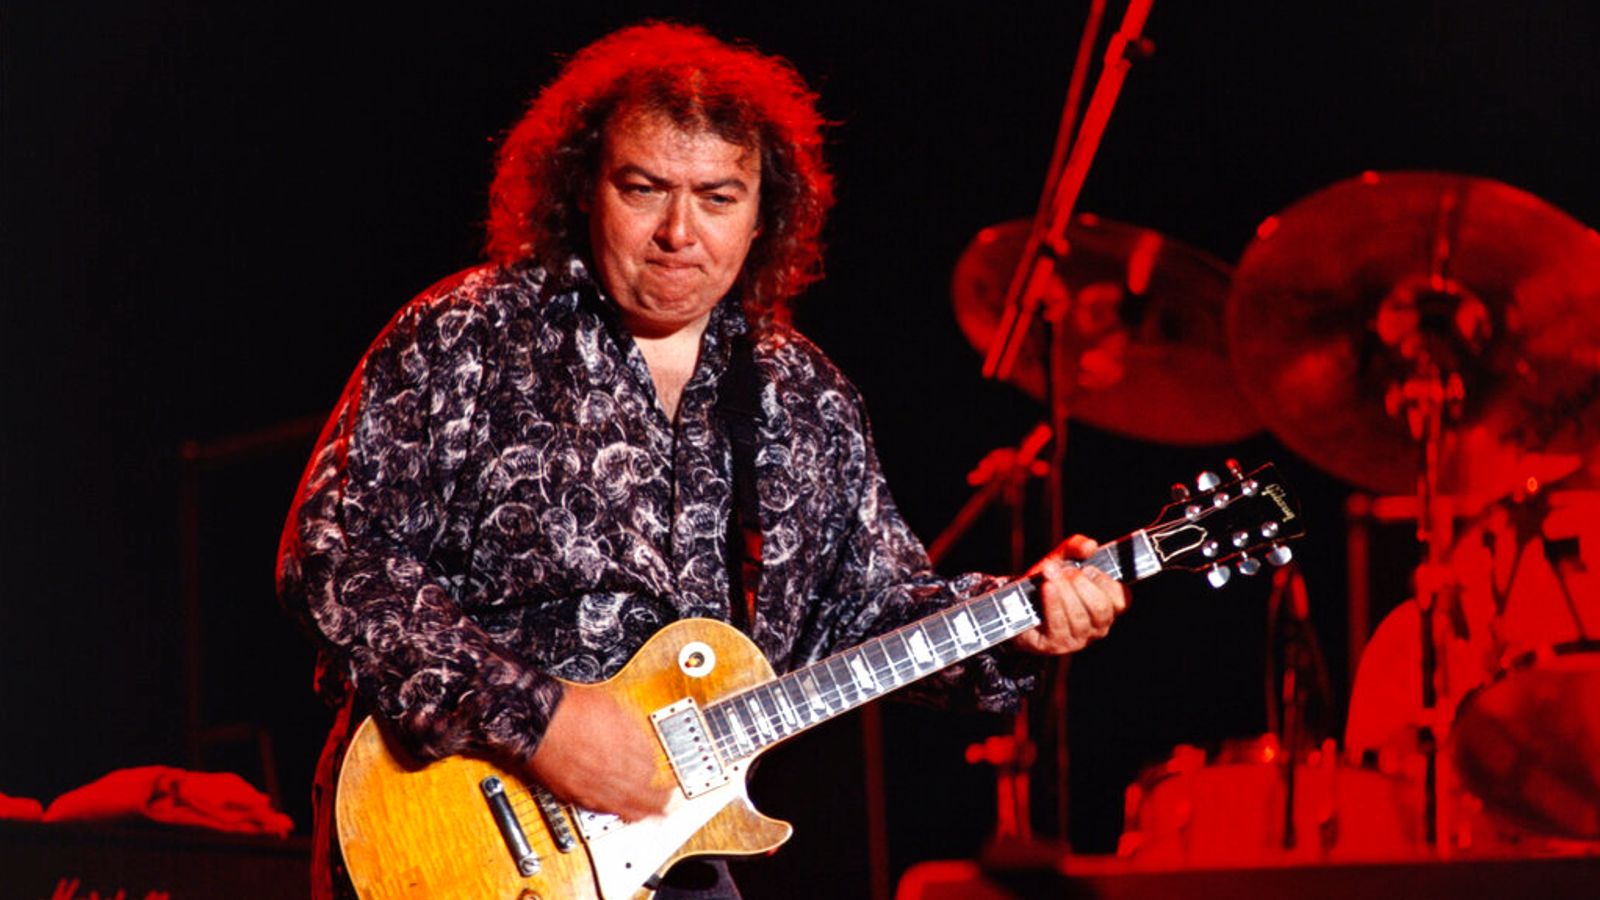 Whitesnake guitarist Bernie Marsden dies